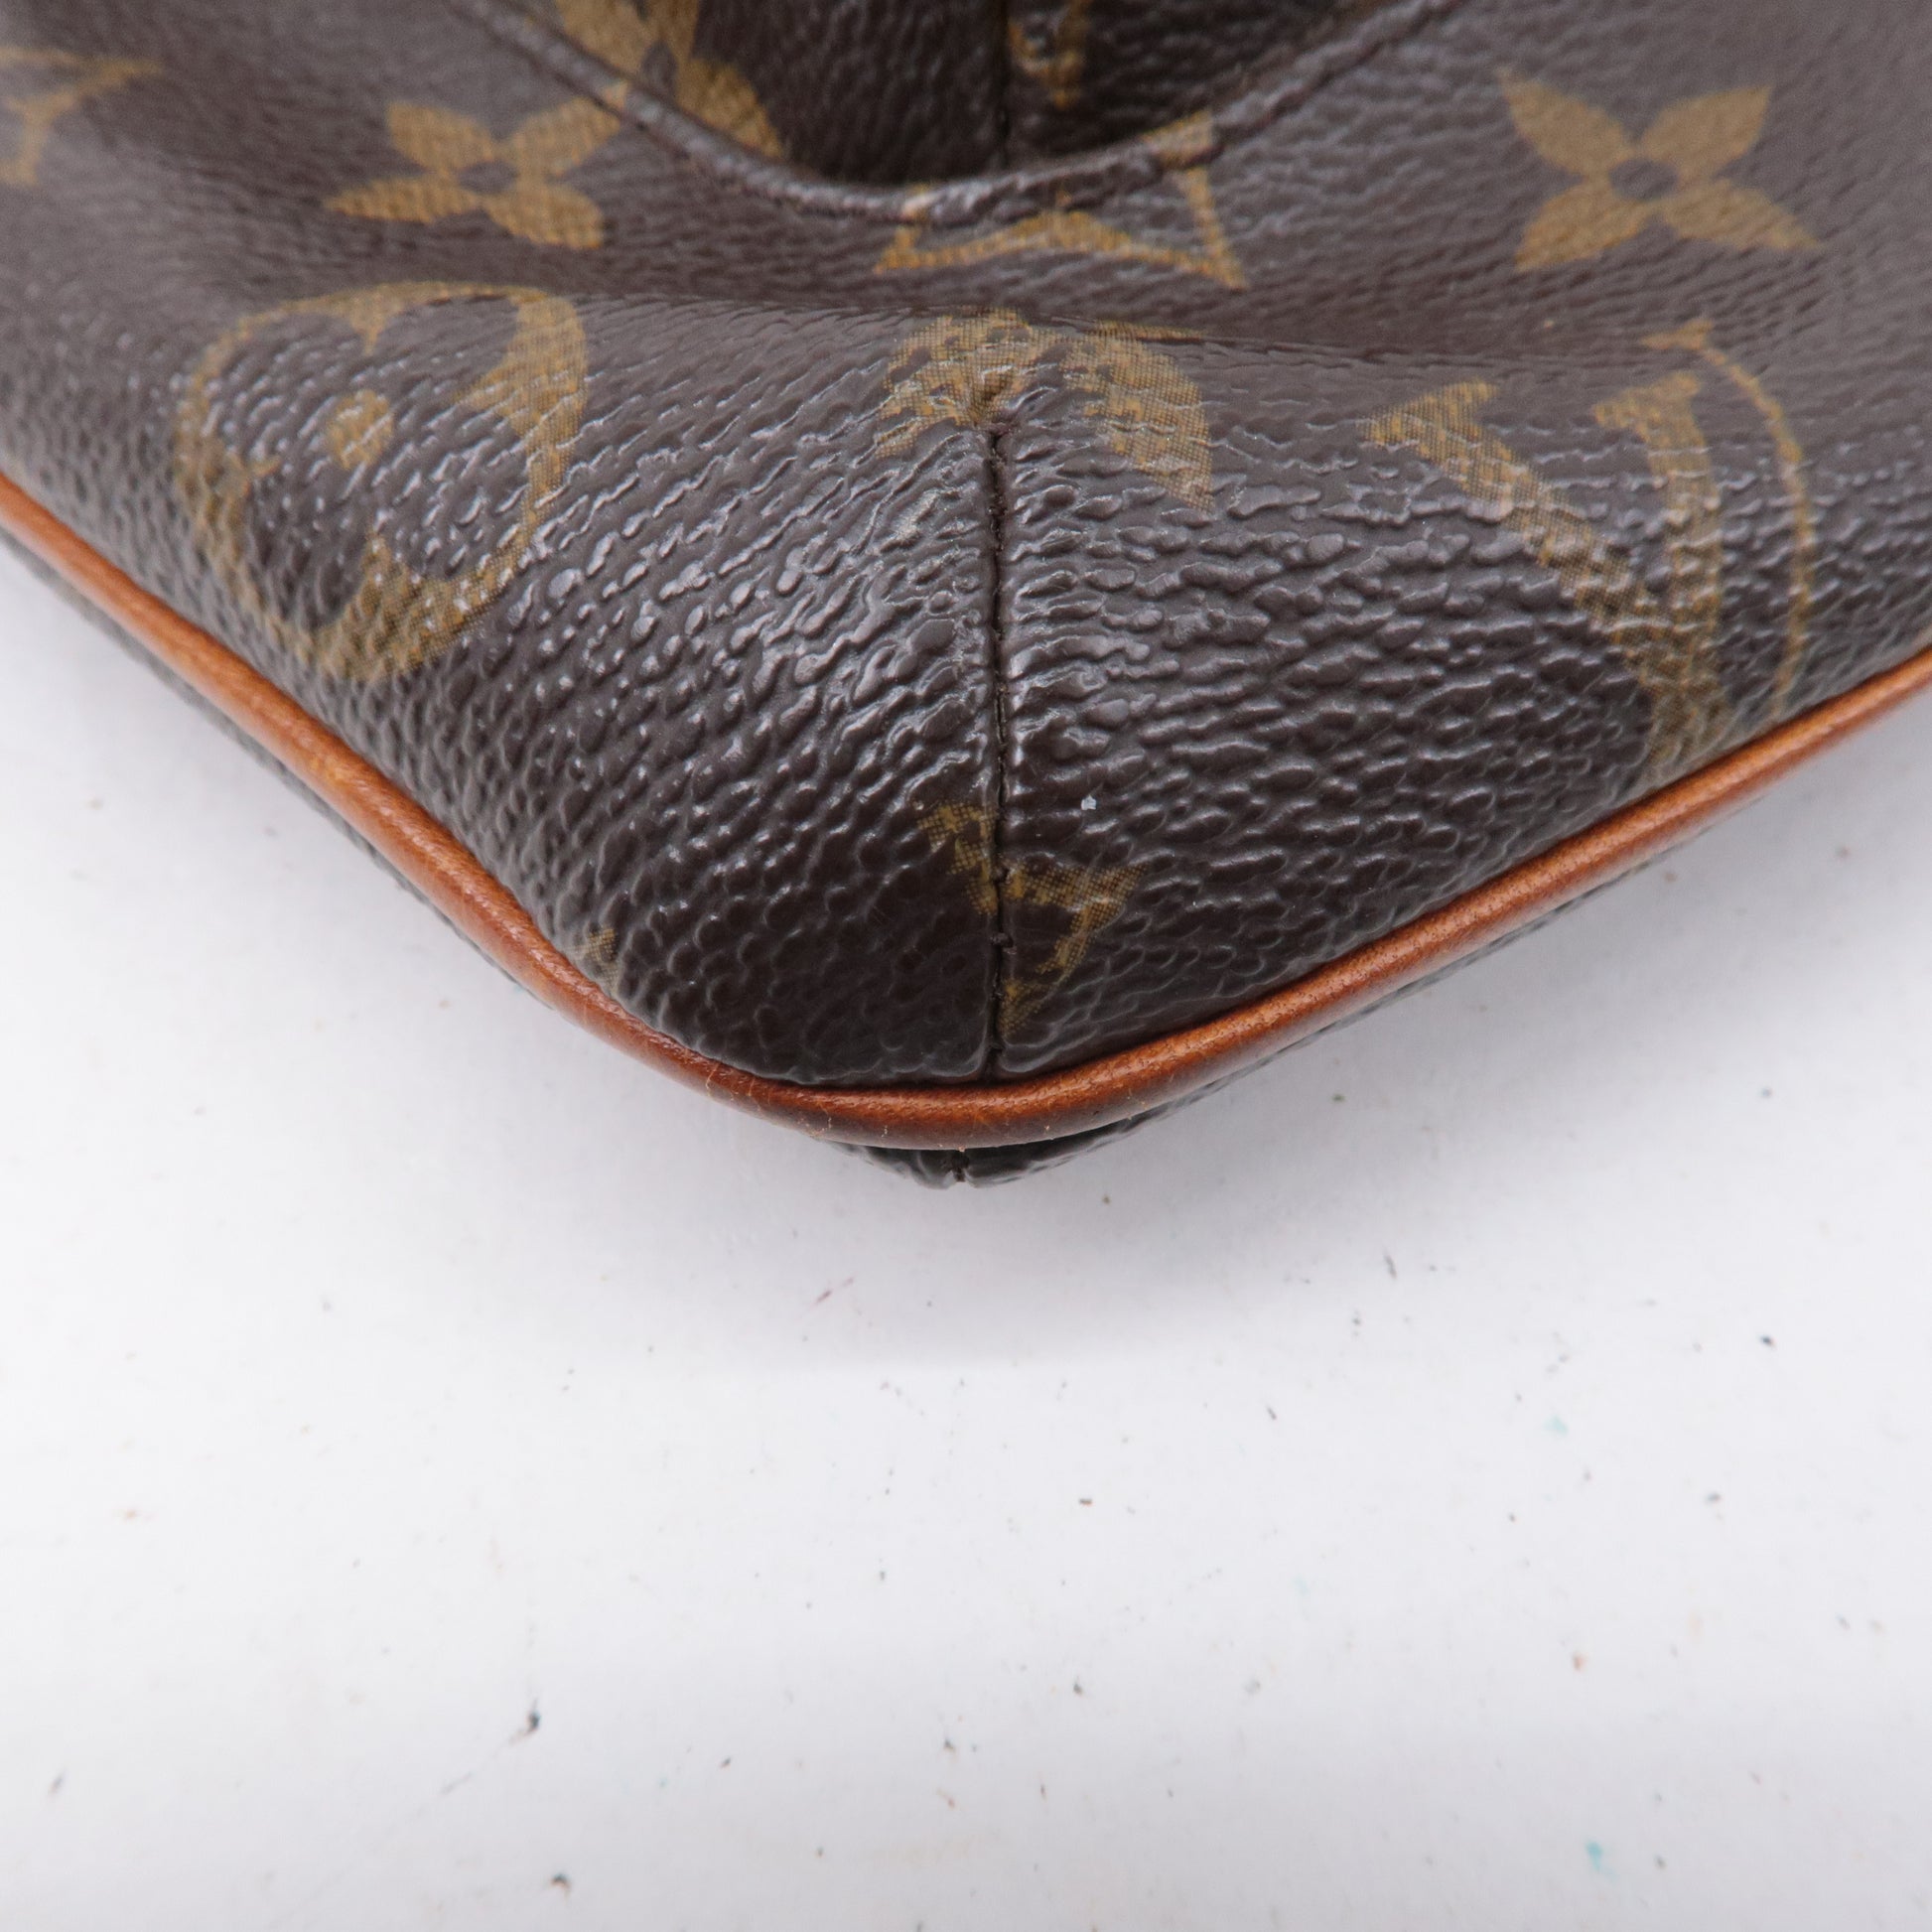 Louis-Vuitton-Monogram-Partition-Pouch-Wristlet-Bag-M51901 – dct